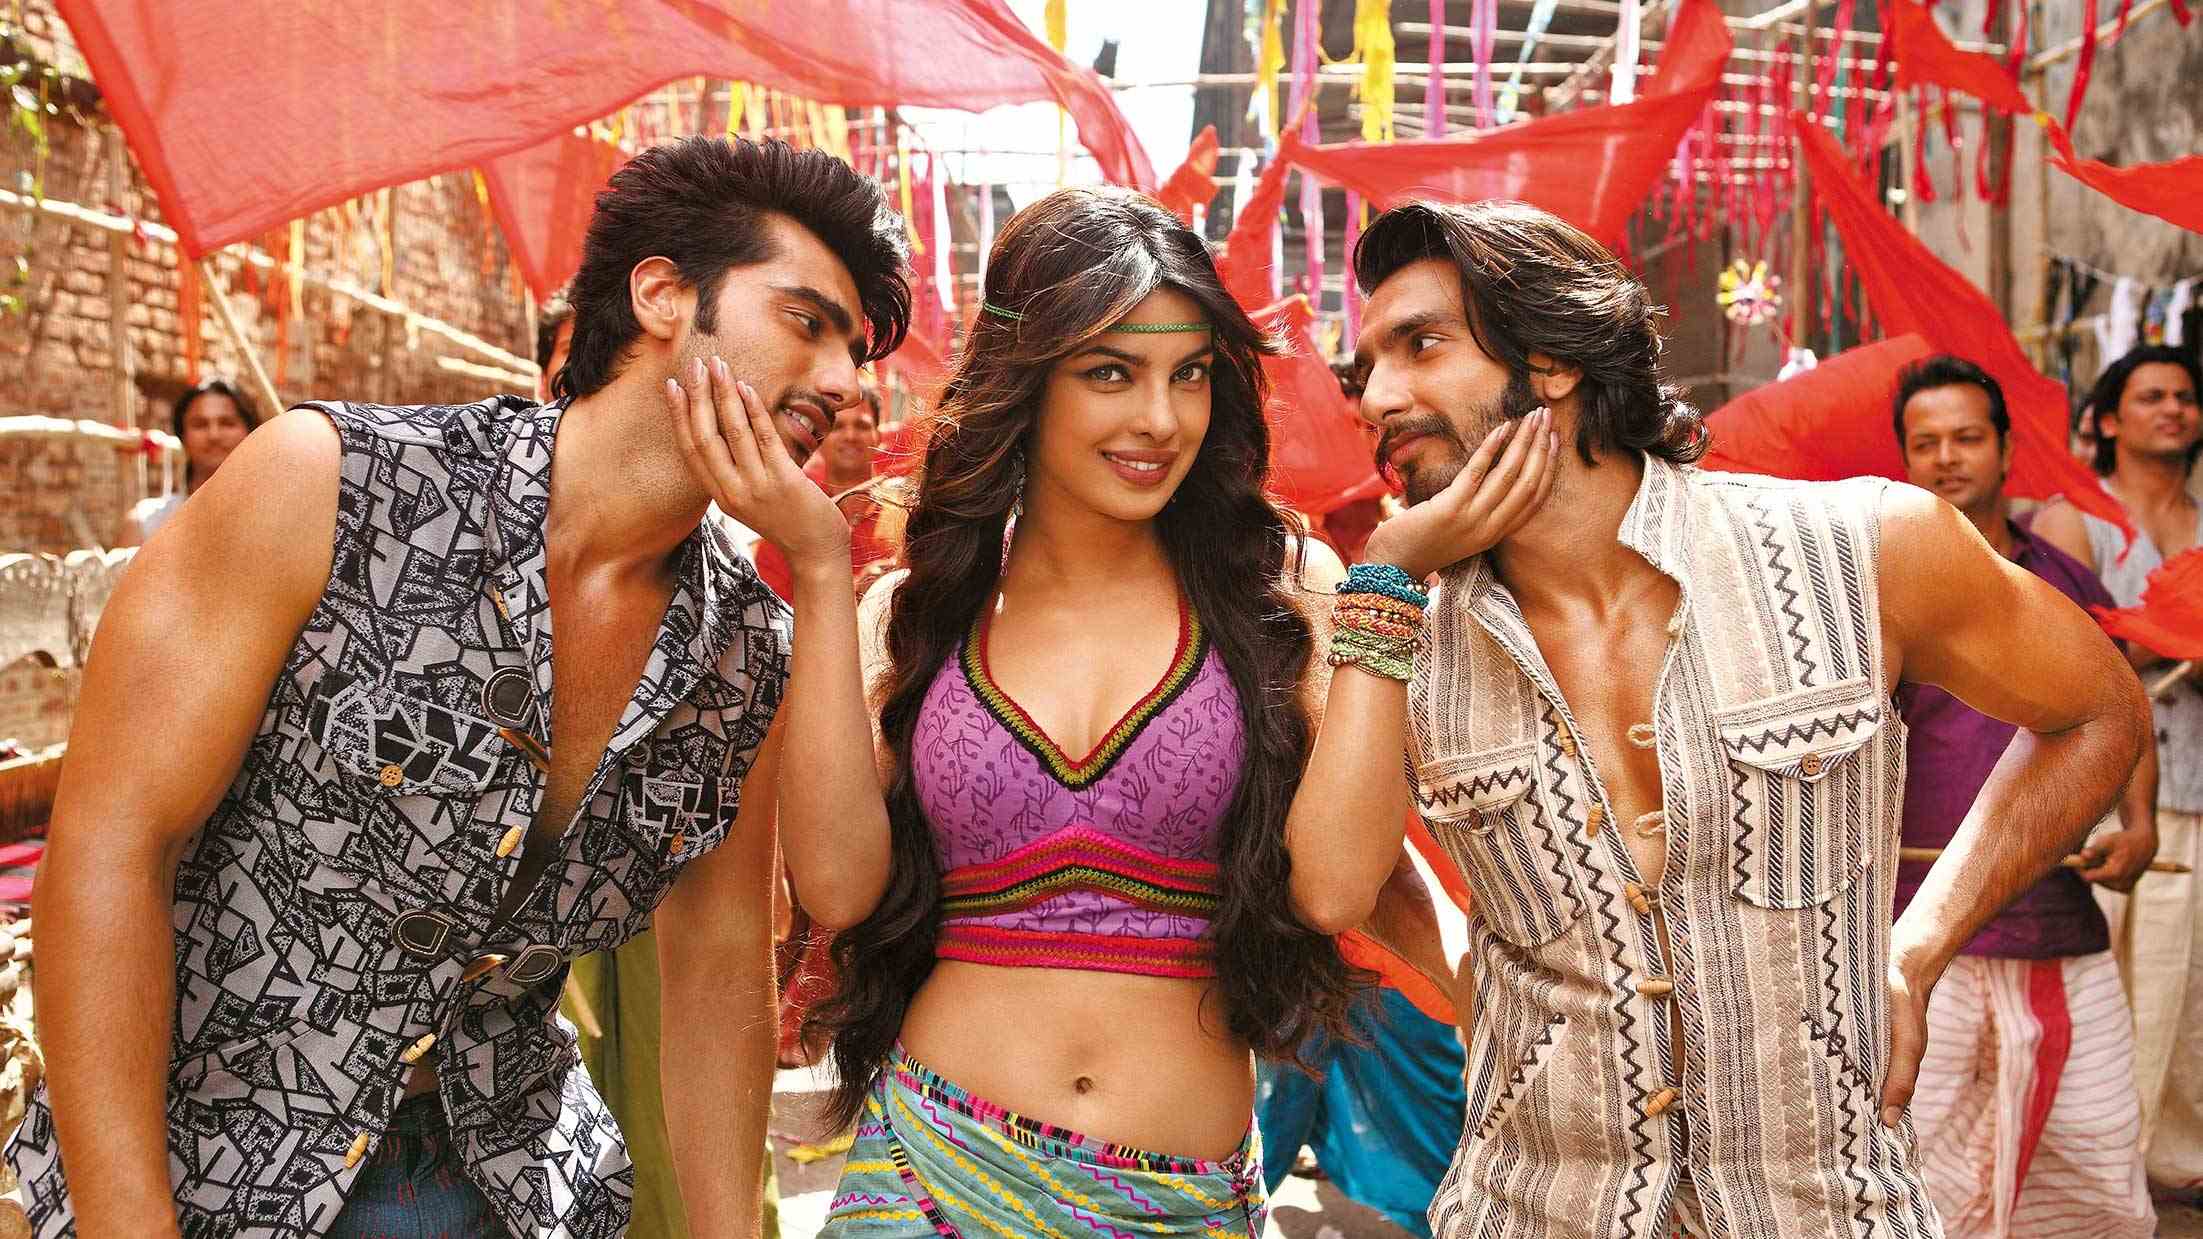 Gunday – Bewertungen und Rezensionen von Internetbenutzern sind im Filmfernsehen wertlos geworden, wo Fanatiker sie in gezielten Kampagnen als Waffe einsetzen